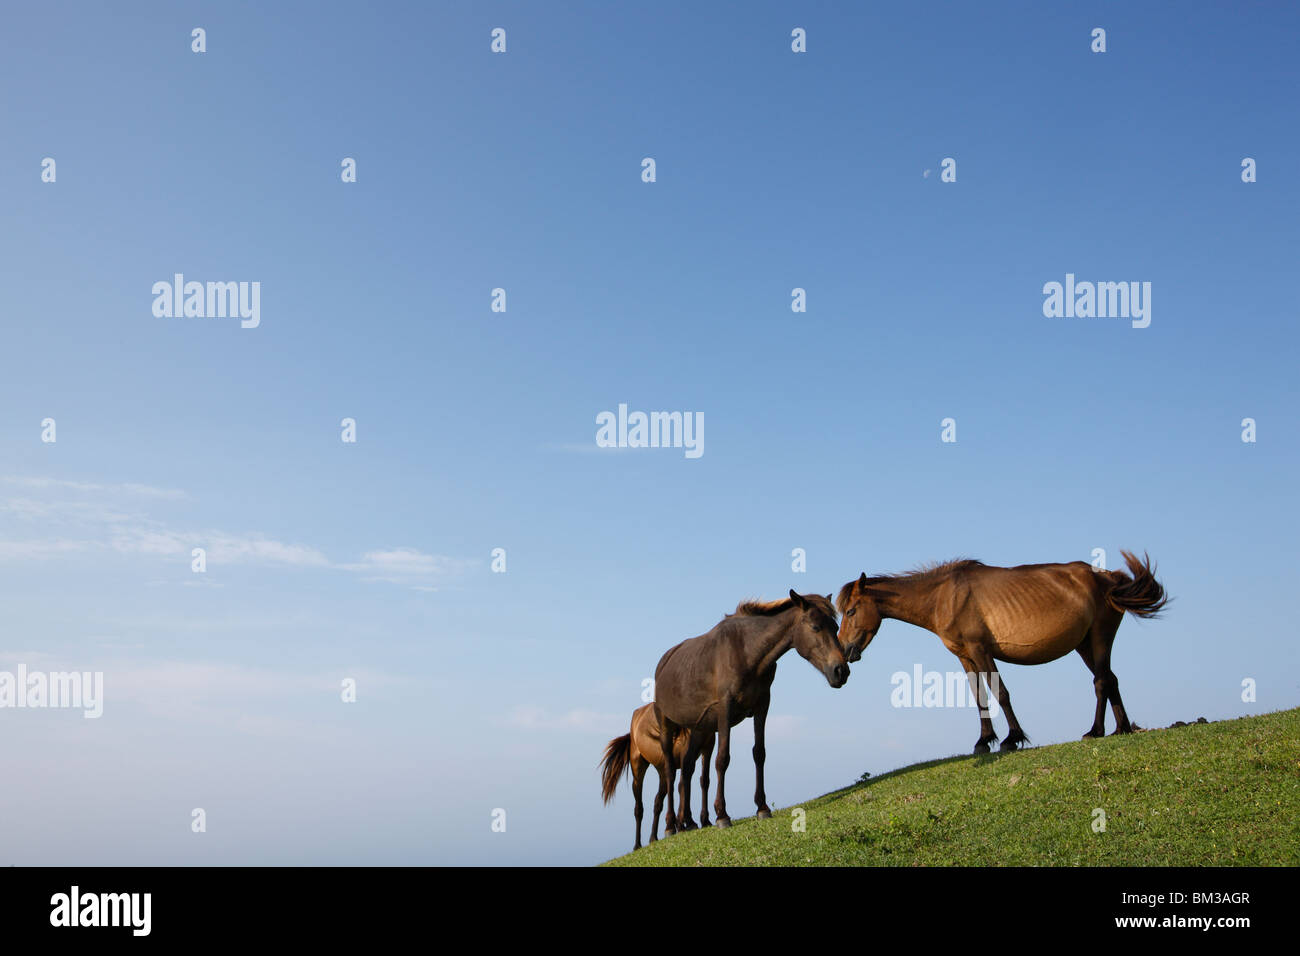 Three horses on a hill Stock Photo